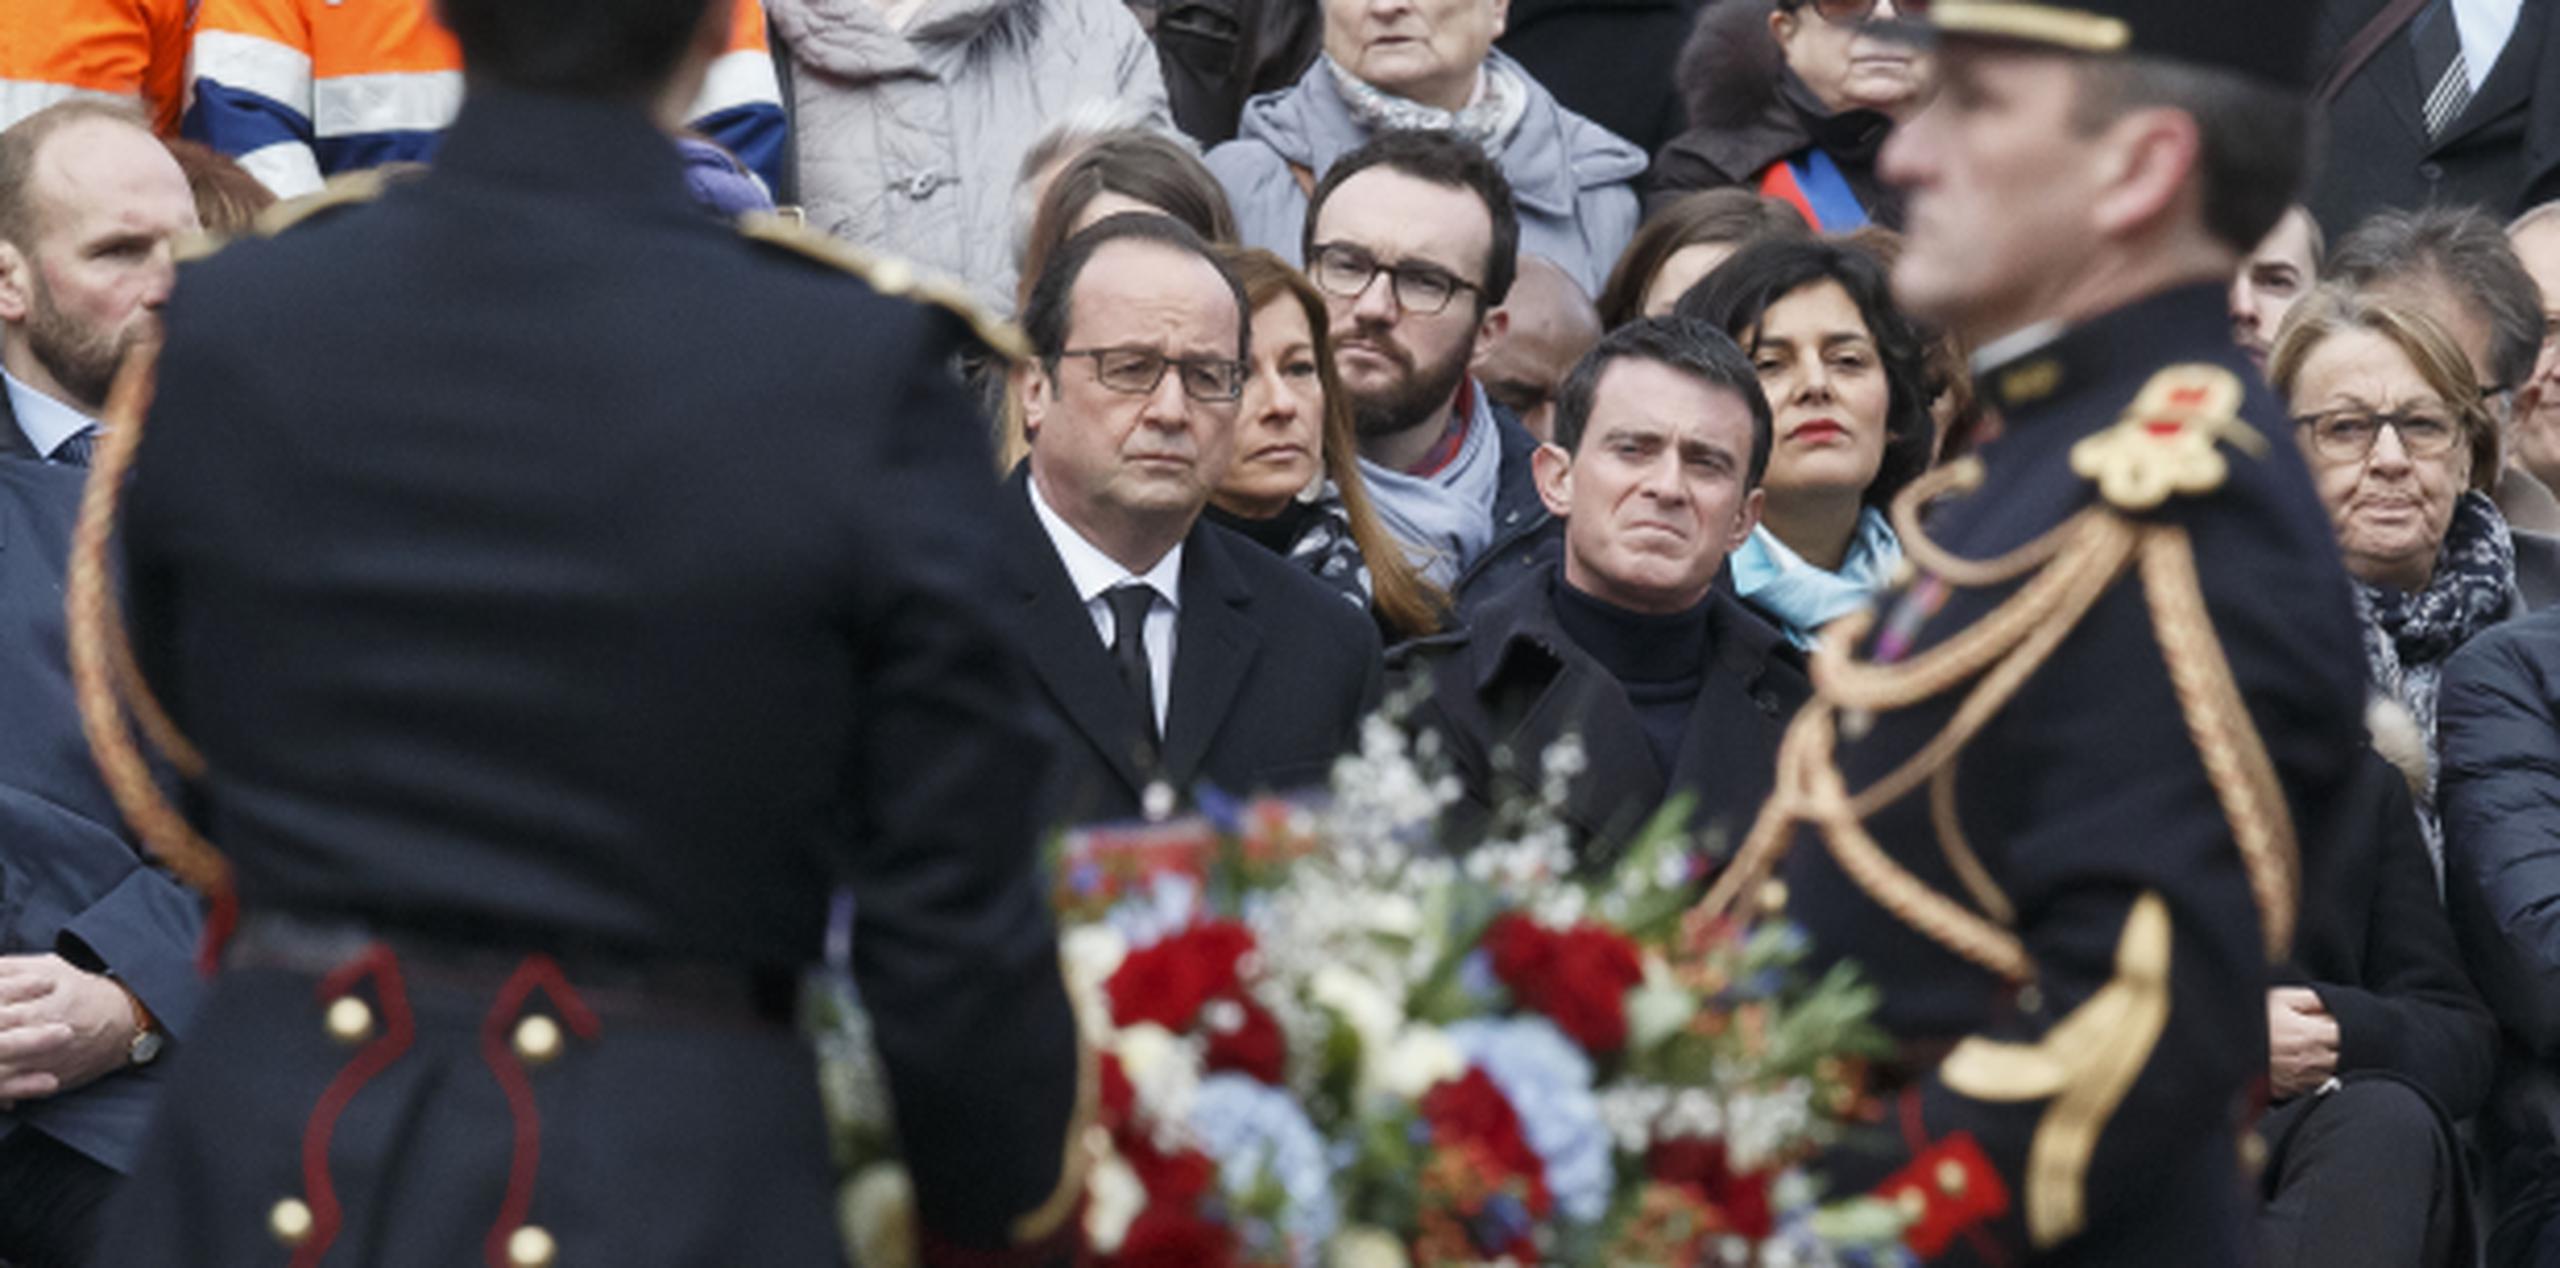 El presidente Francois Hollande, al centro, observa la ofrenda floral en honor a los fallecidos. (AP)